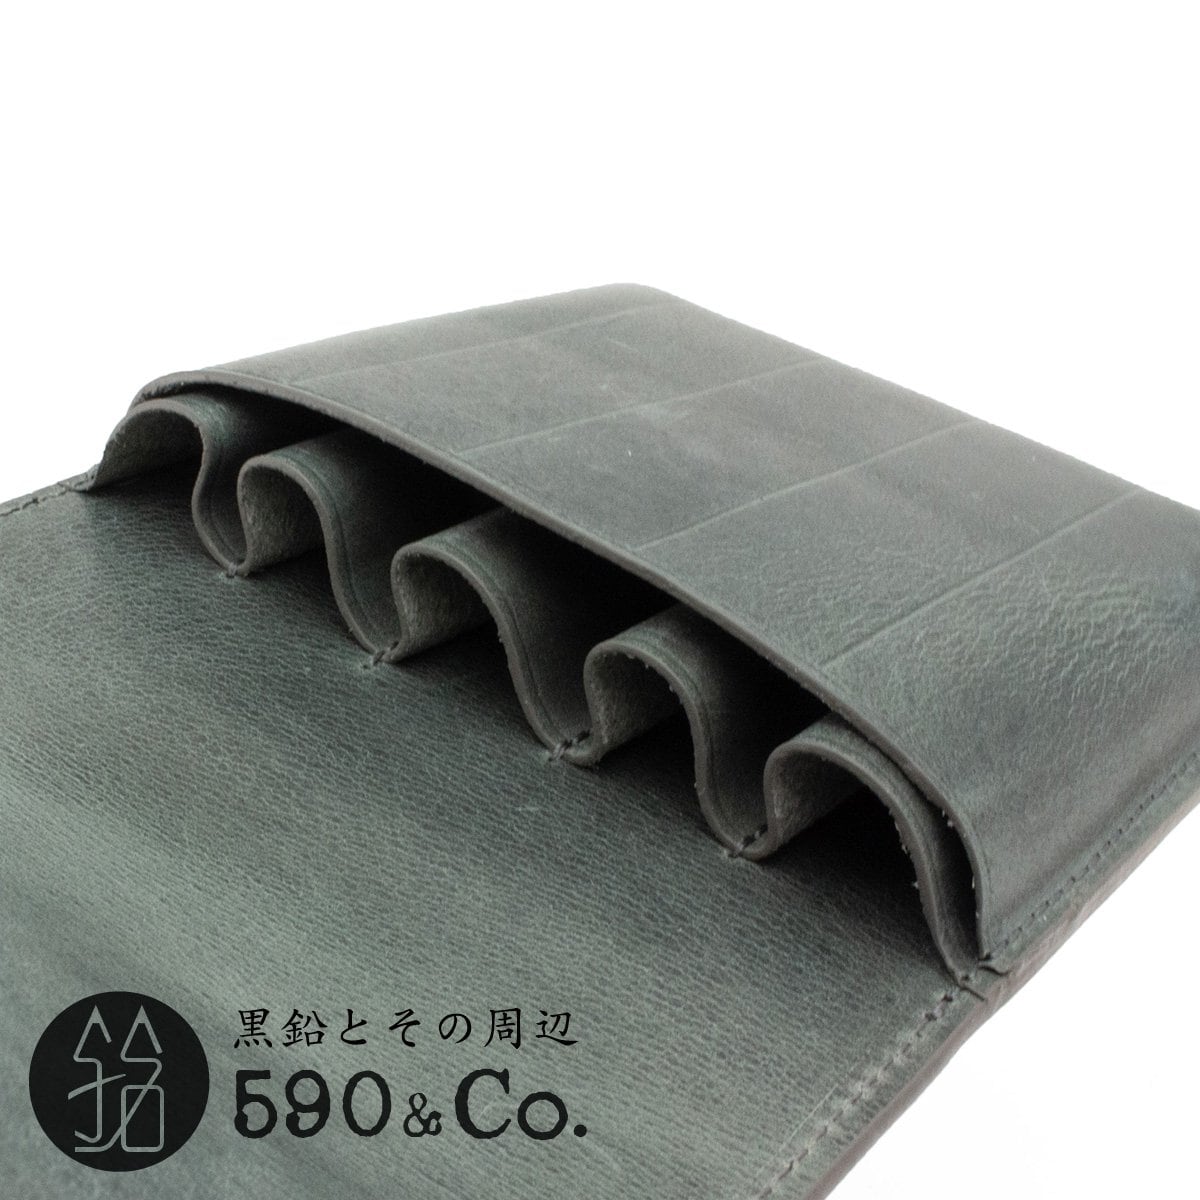 Galen Leather/ガレンレザー】フラップペンケース・5本用 (ブラック) 590Co.